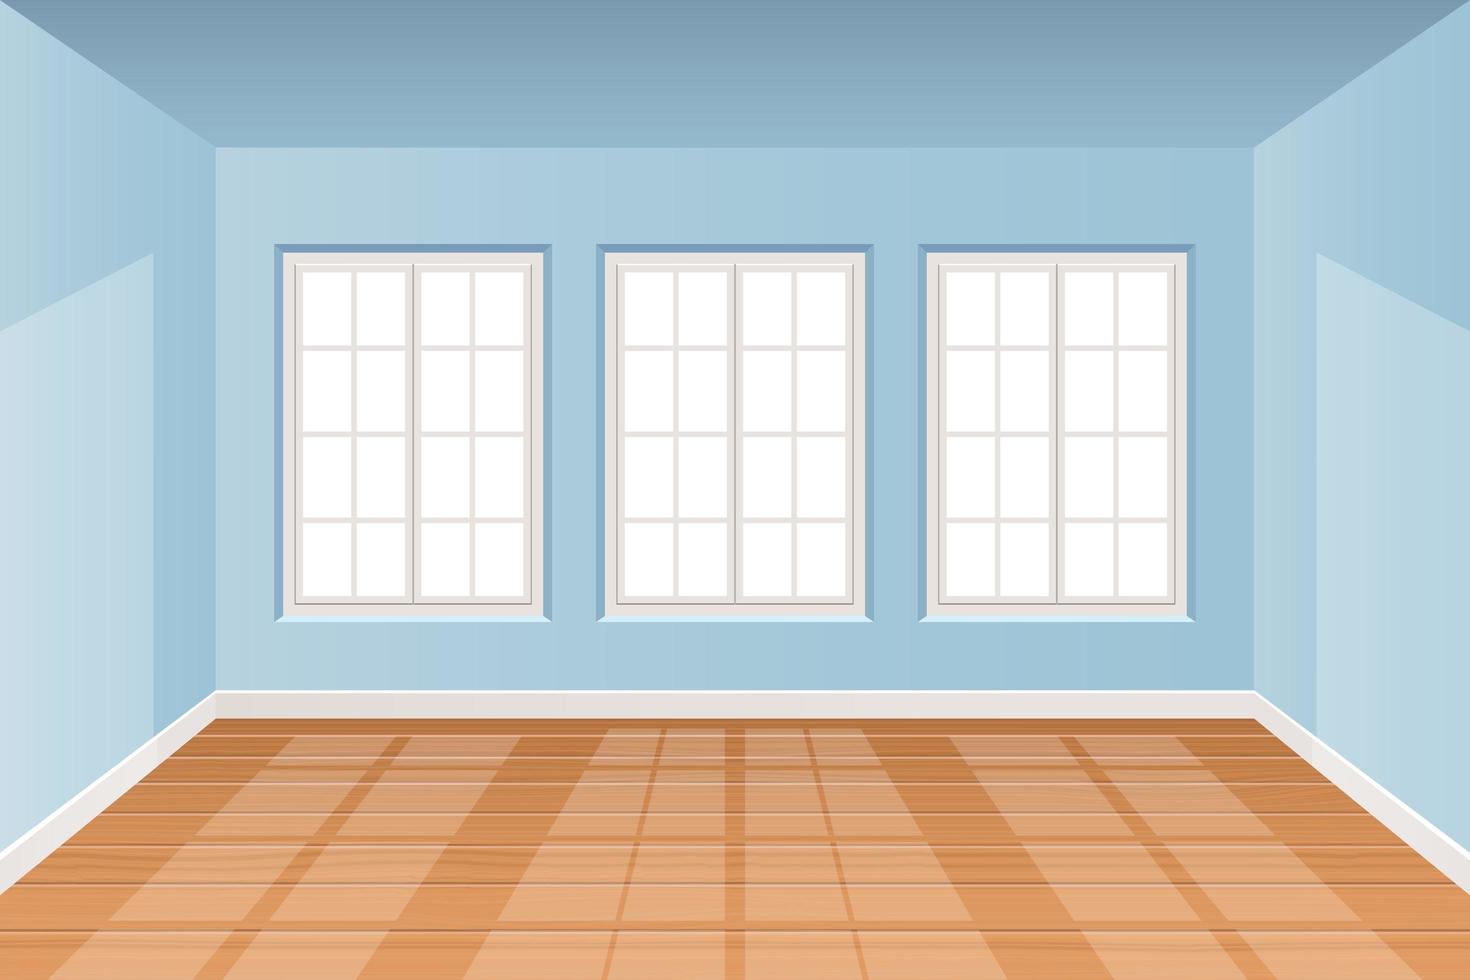 realistische kamer interieur met houten vloer vector ontwerp illustratie